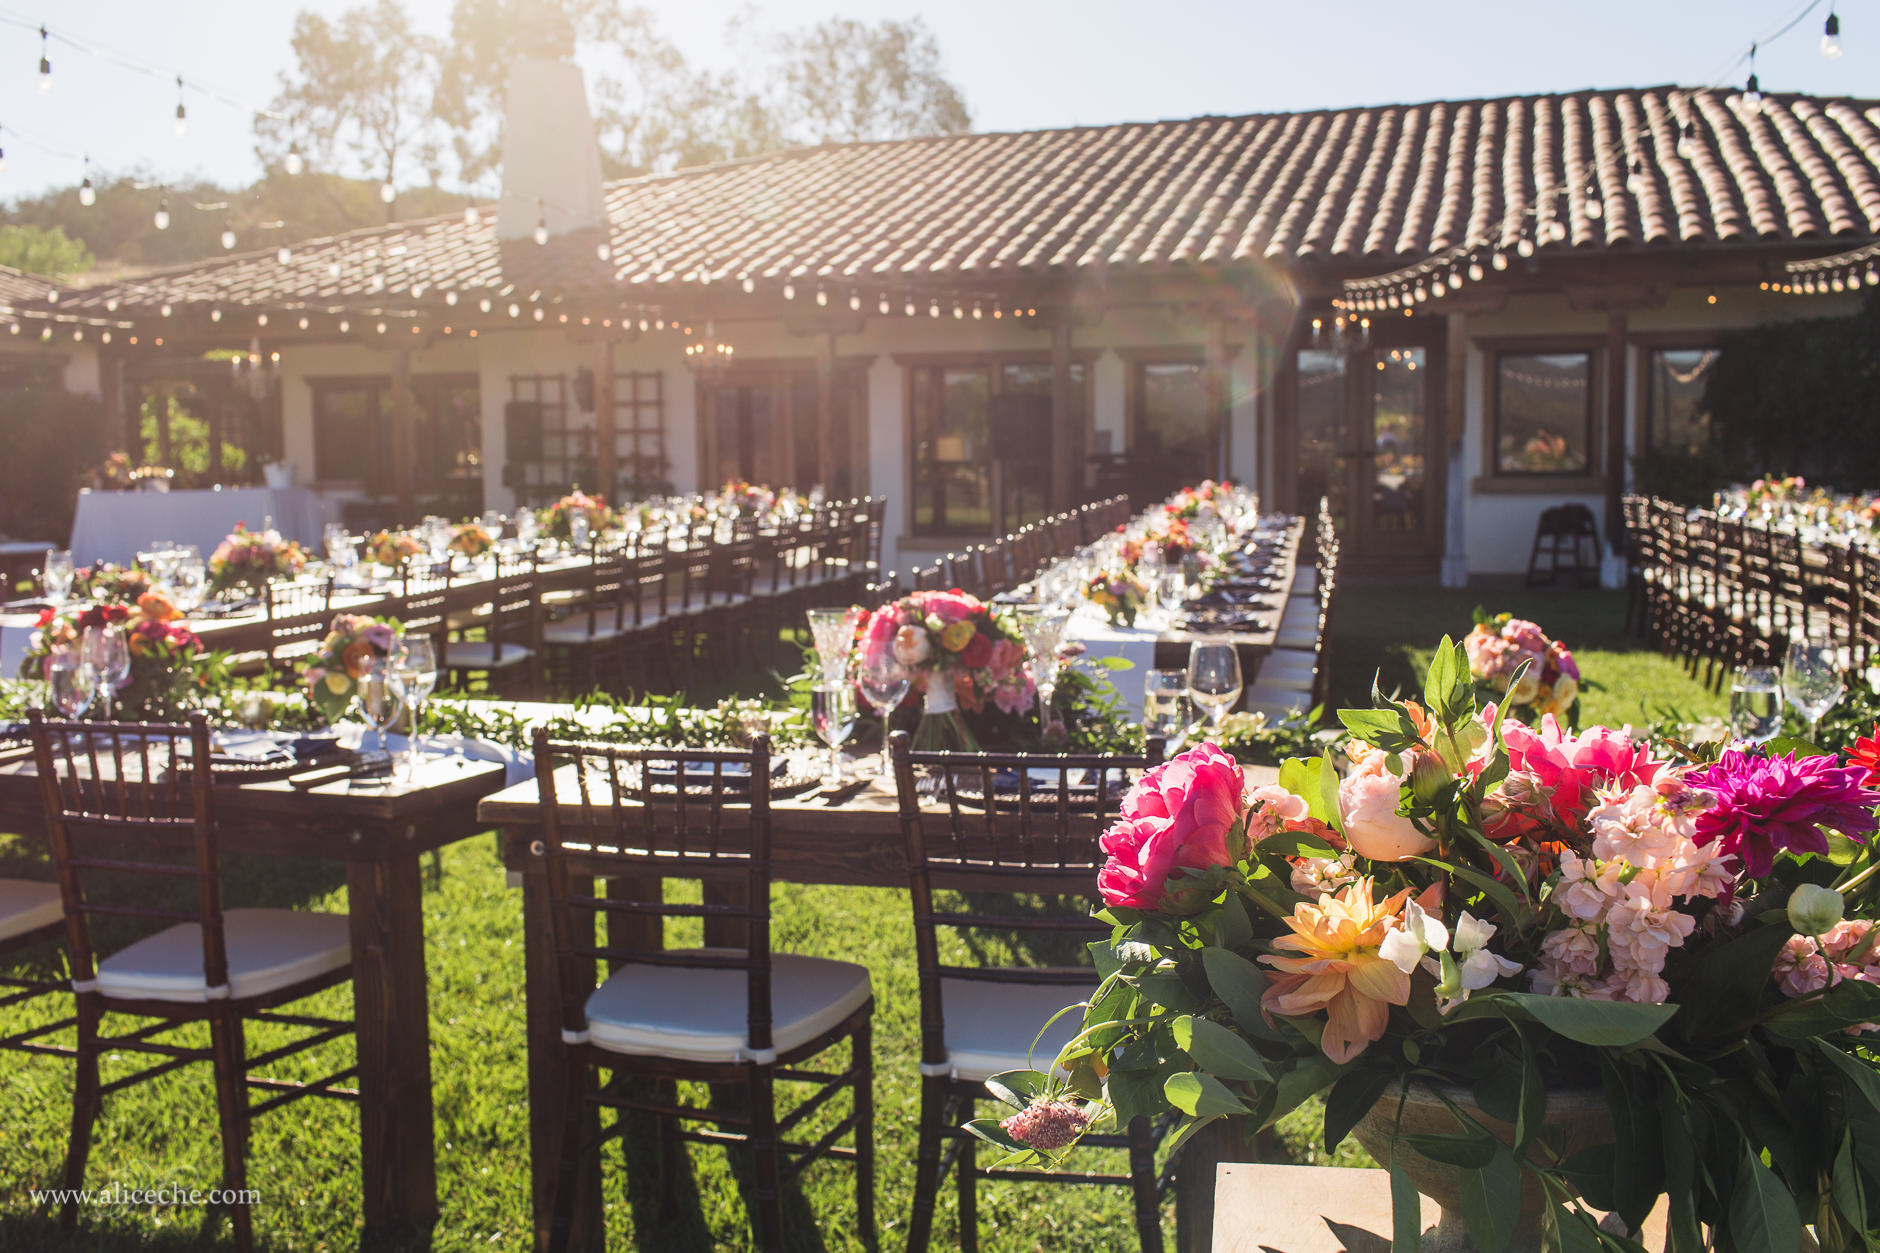 The Casitas Estate San Luis Obispo Wedding Venue Reception Lawn